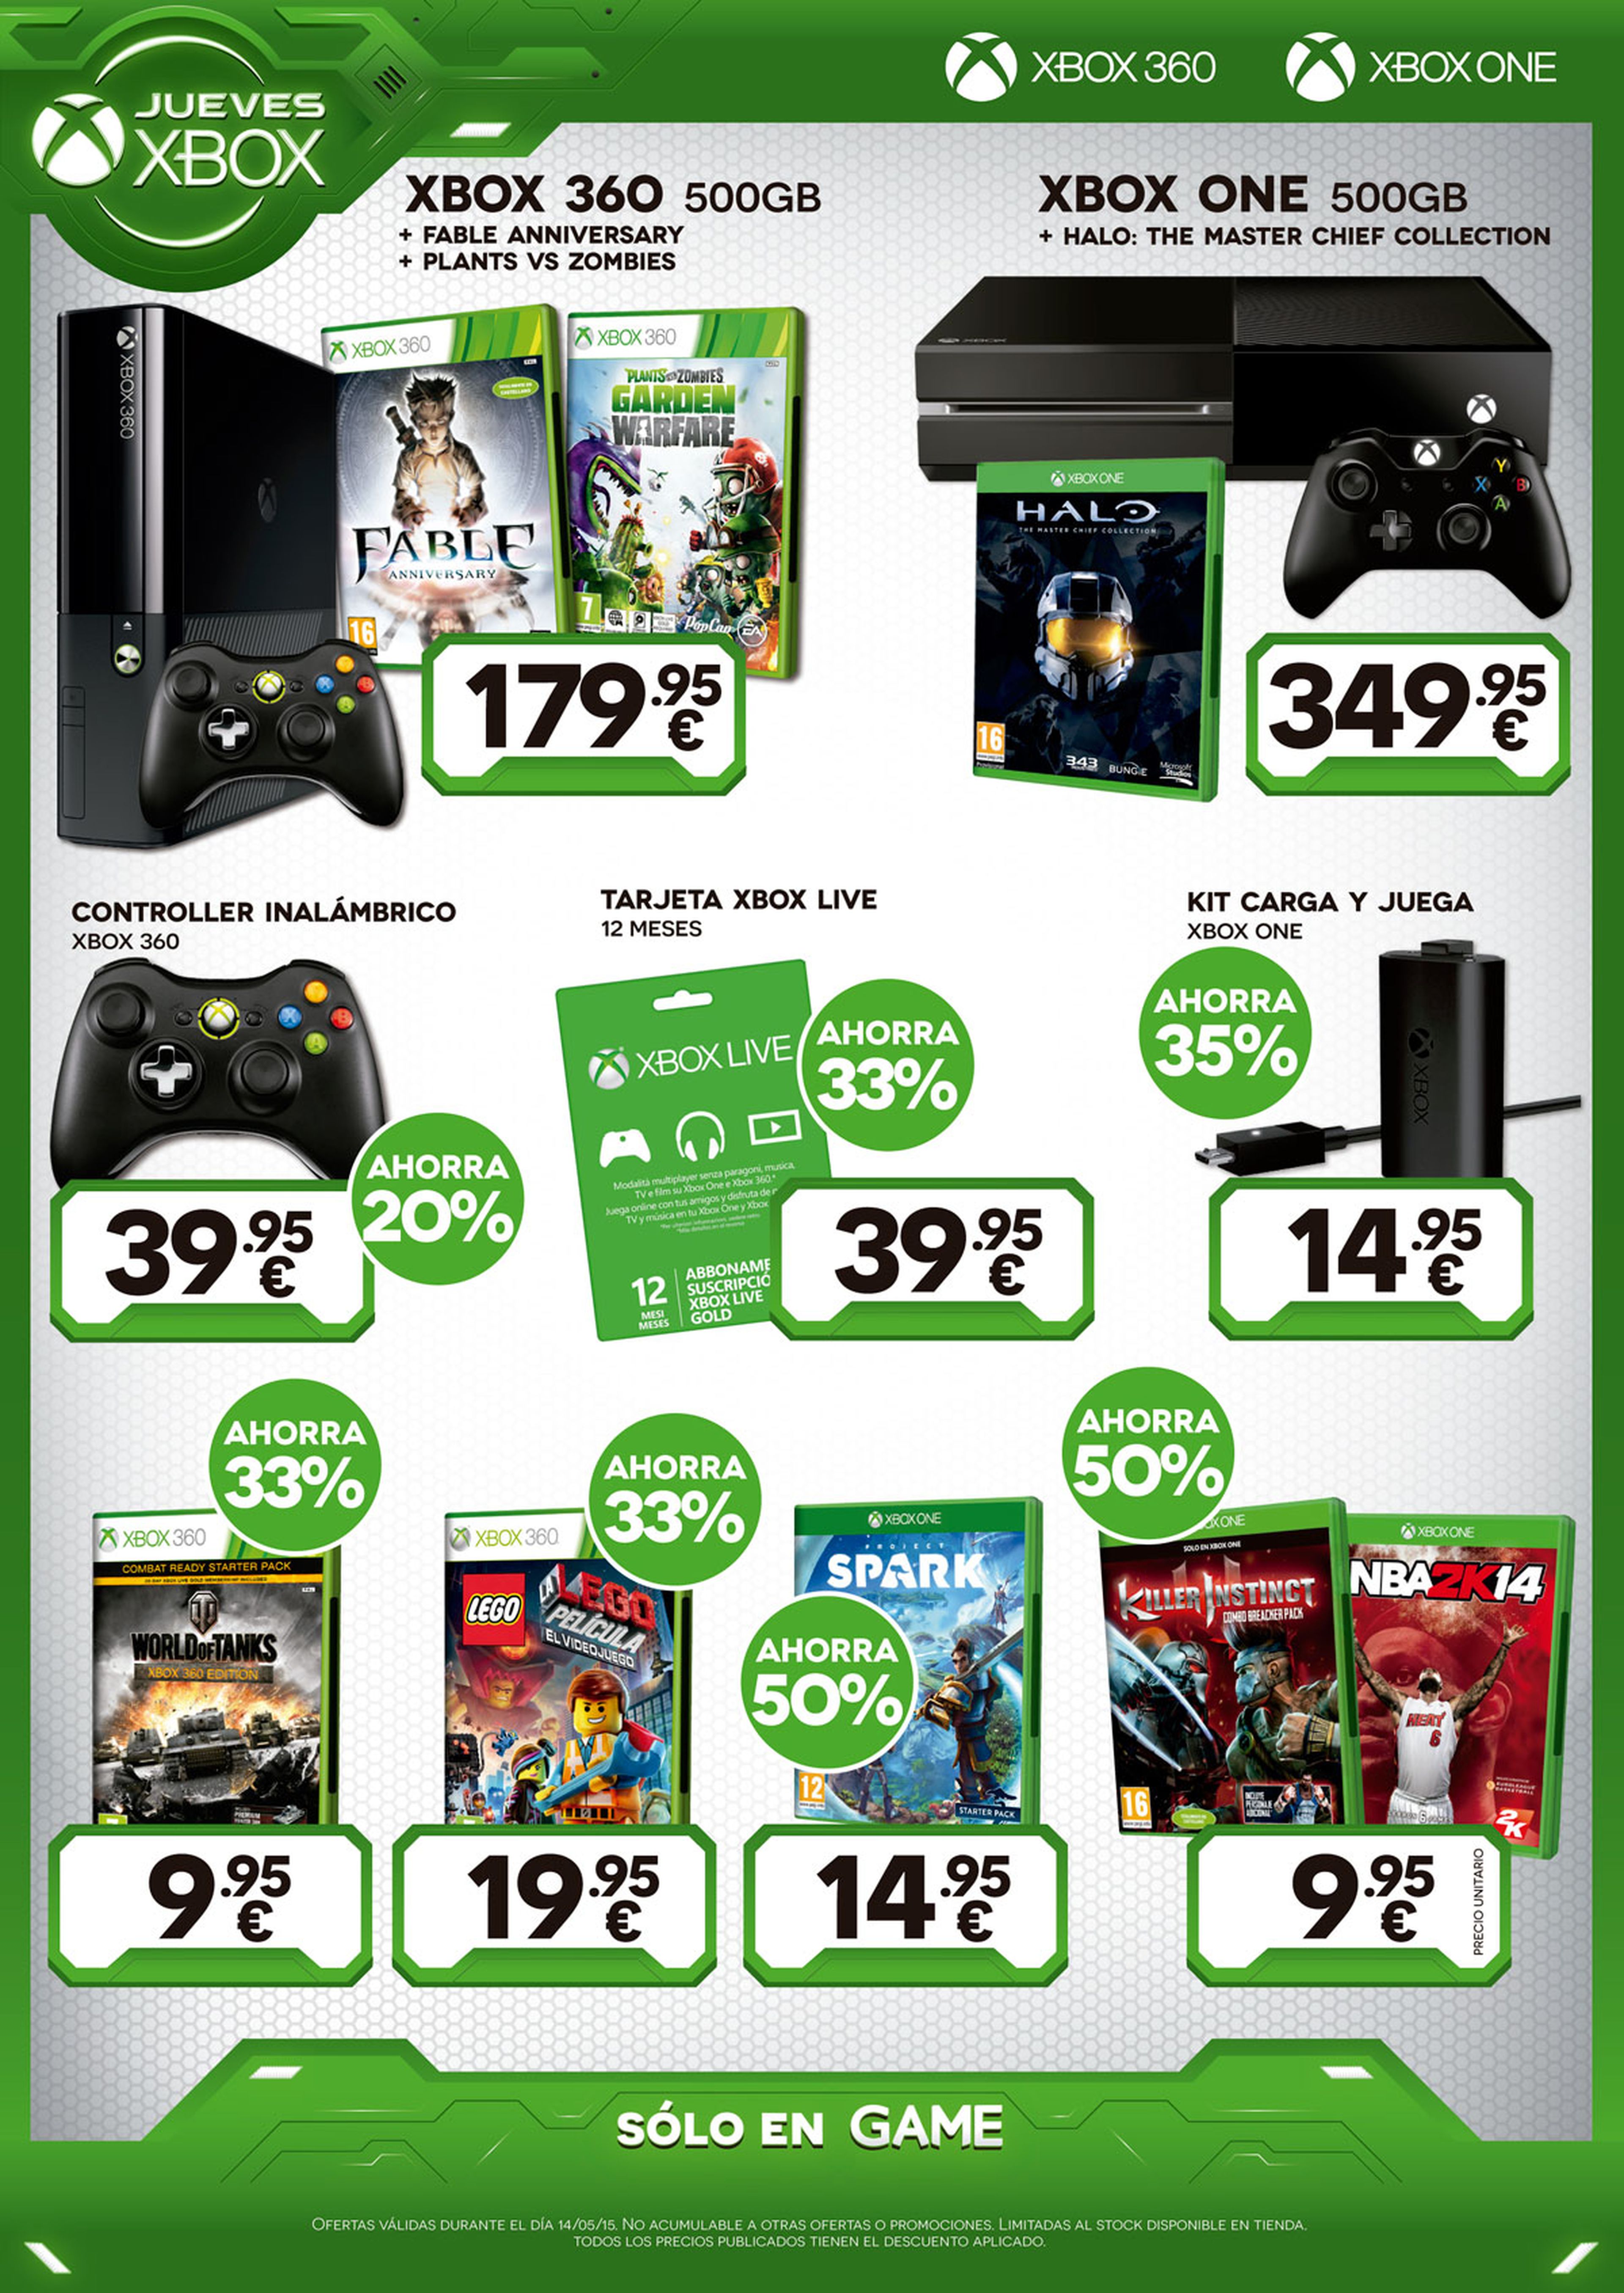 Jueves Xbox en GAME: Undécima semana de ofertas